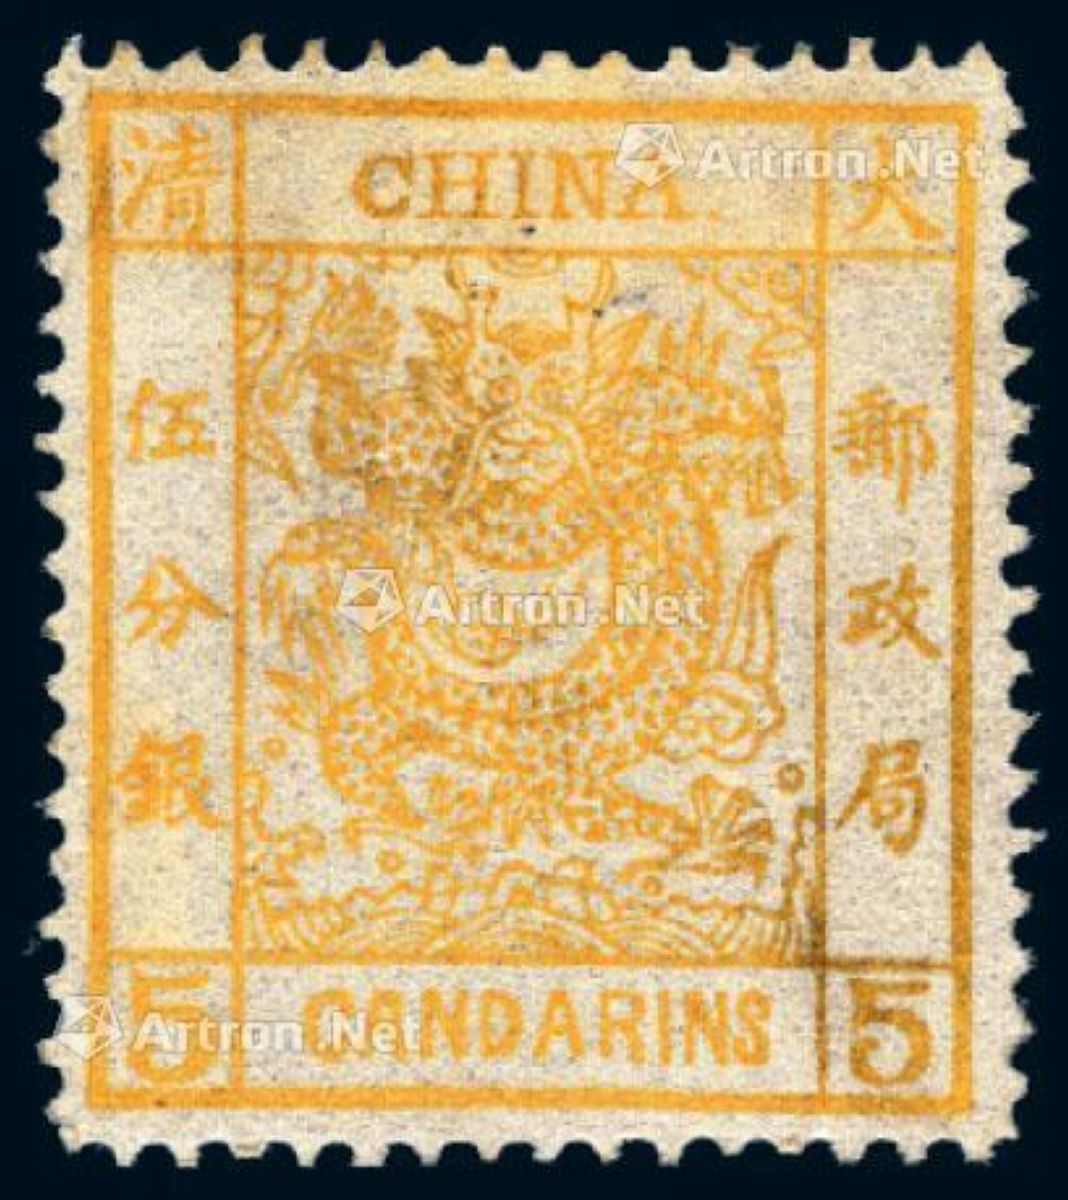 1878年大龙薄纸邮票5分银一枚_2017年秋季拍卖会_北京诚轩_拍品价格_ 